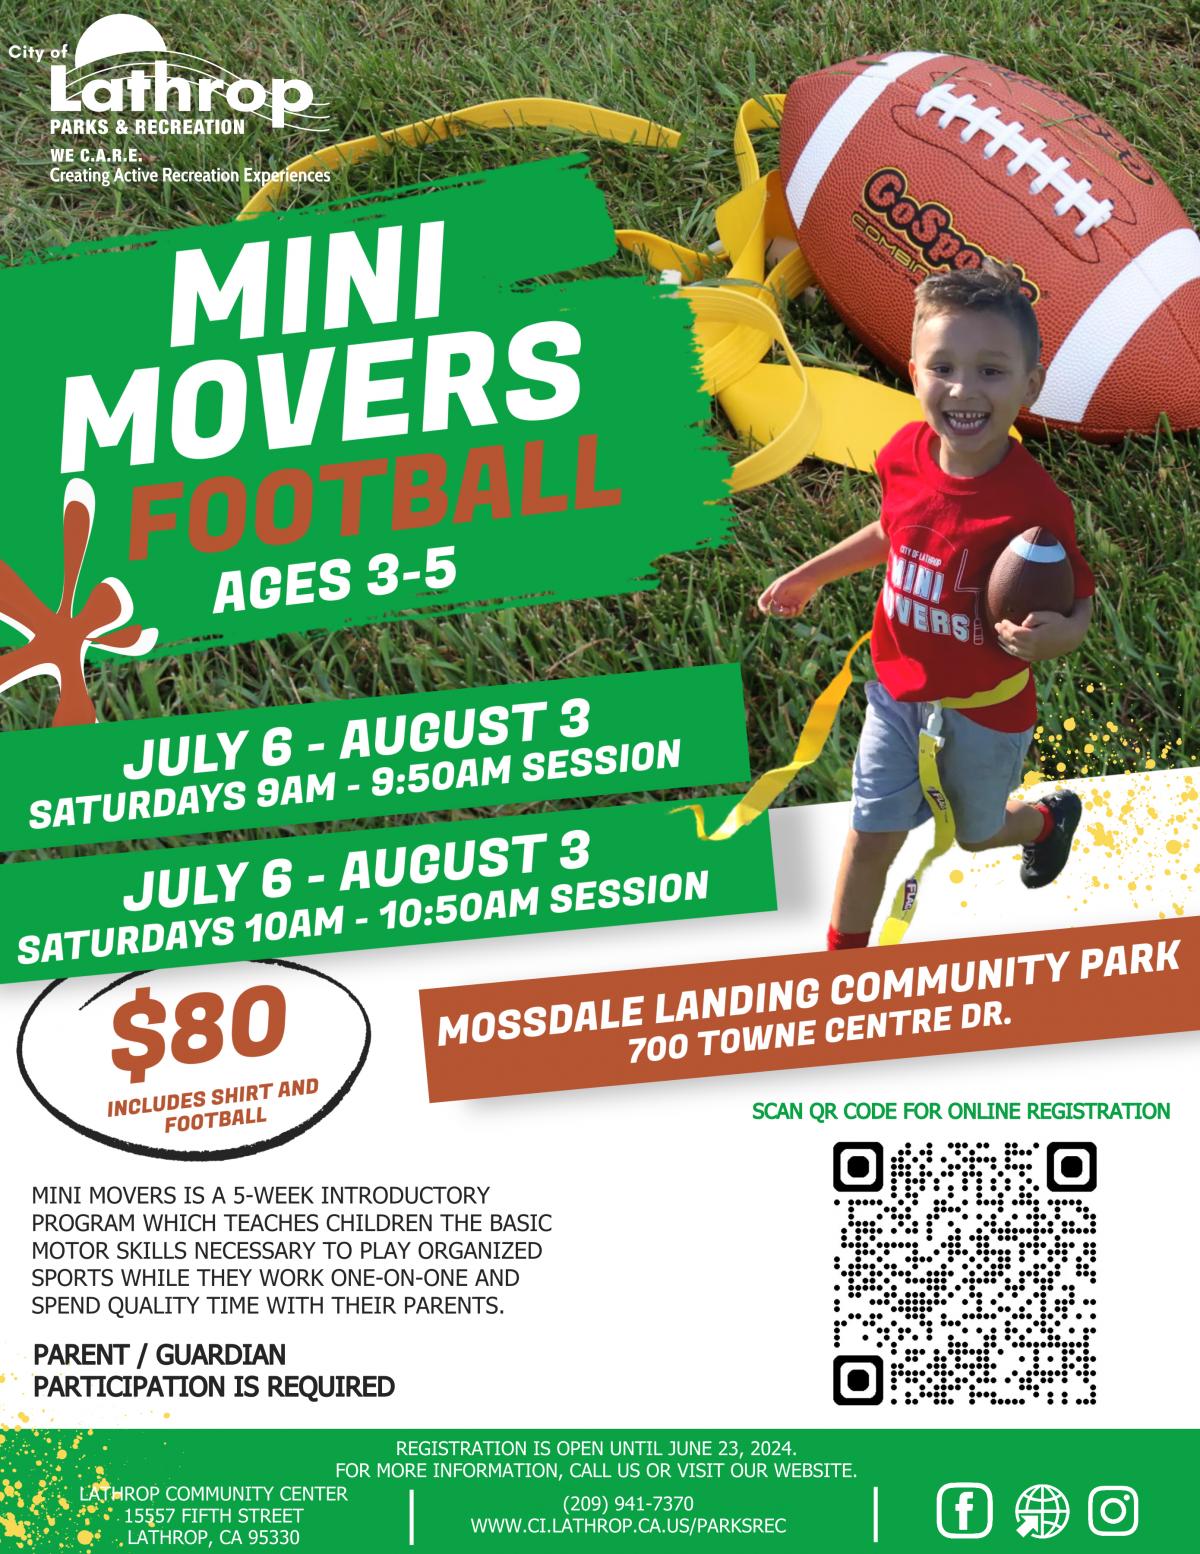 Mini Movers Flag Football | Saturdays Jul 6 - Aug 3 | Mossdale Landing Community Park 700 Towne Centre Dr. | $80 | Ages 3-5